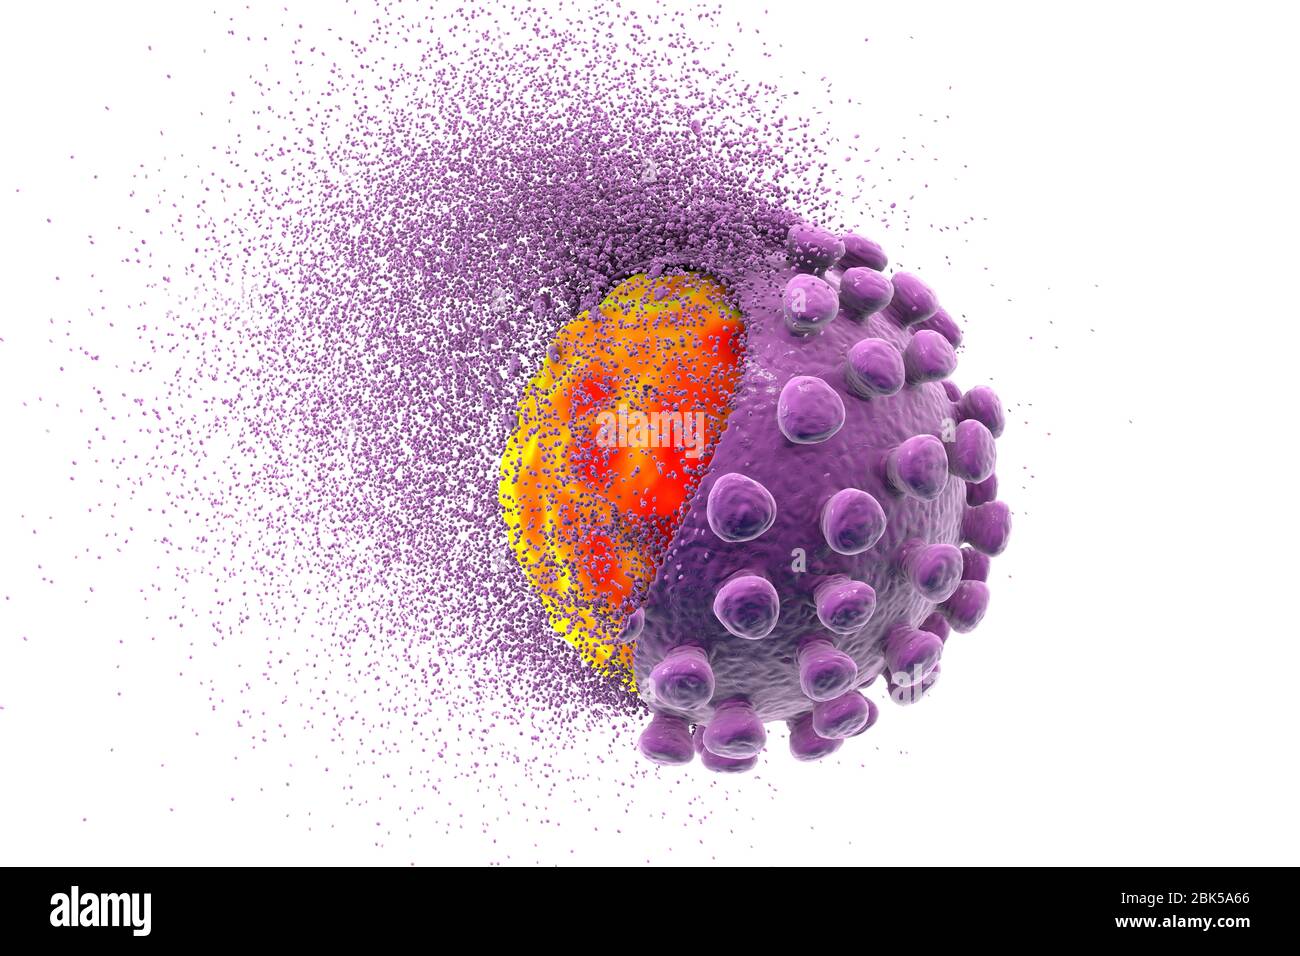 Erradicando el coronavirus covid-19, ilustración conceptual. El nuevo coronavirus SARS-CoV-2 (anteriormente 2019-CoV) surgió en Wuhan, China, en diciembre de 2019. El virus causa una enfermedad respiratoria leve (Covid-19) que puede convertirse en neumonía y ser mortal en algunos casos. Los coronavirus toman su nombre de su corona (corona) de proteínas de punta superficial (grandes protuberancias), que se utilizan para unir y penetrar sus células huésped. Foto de stock